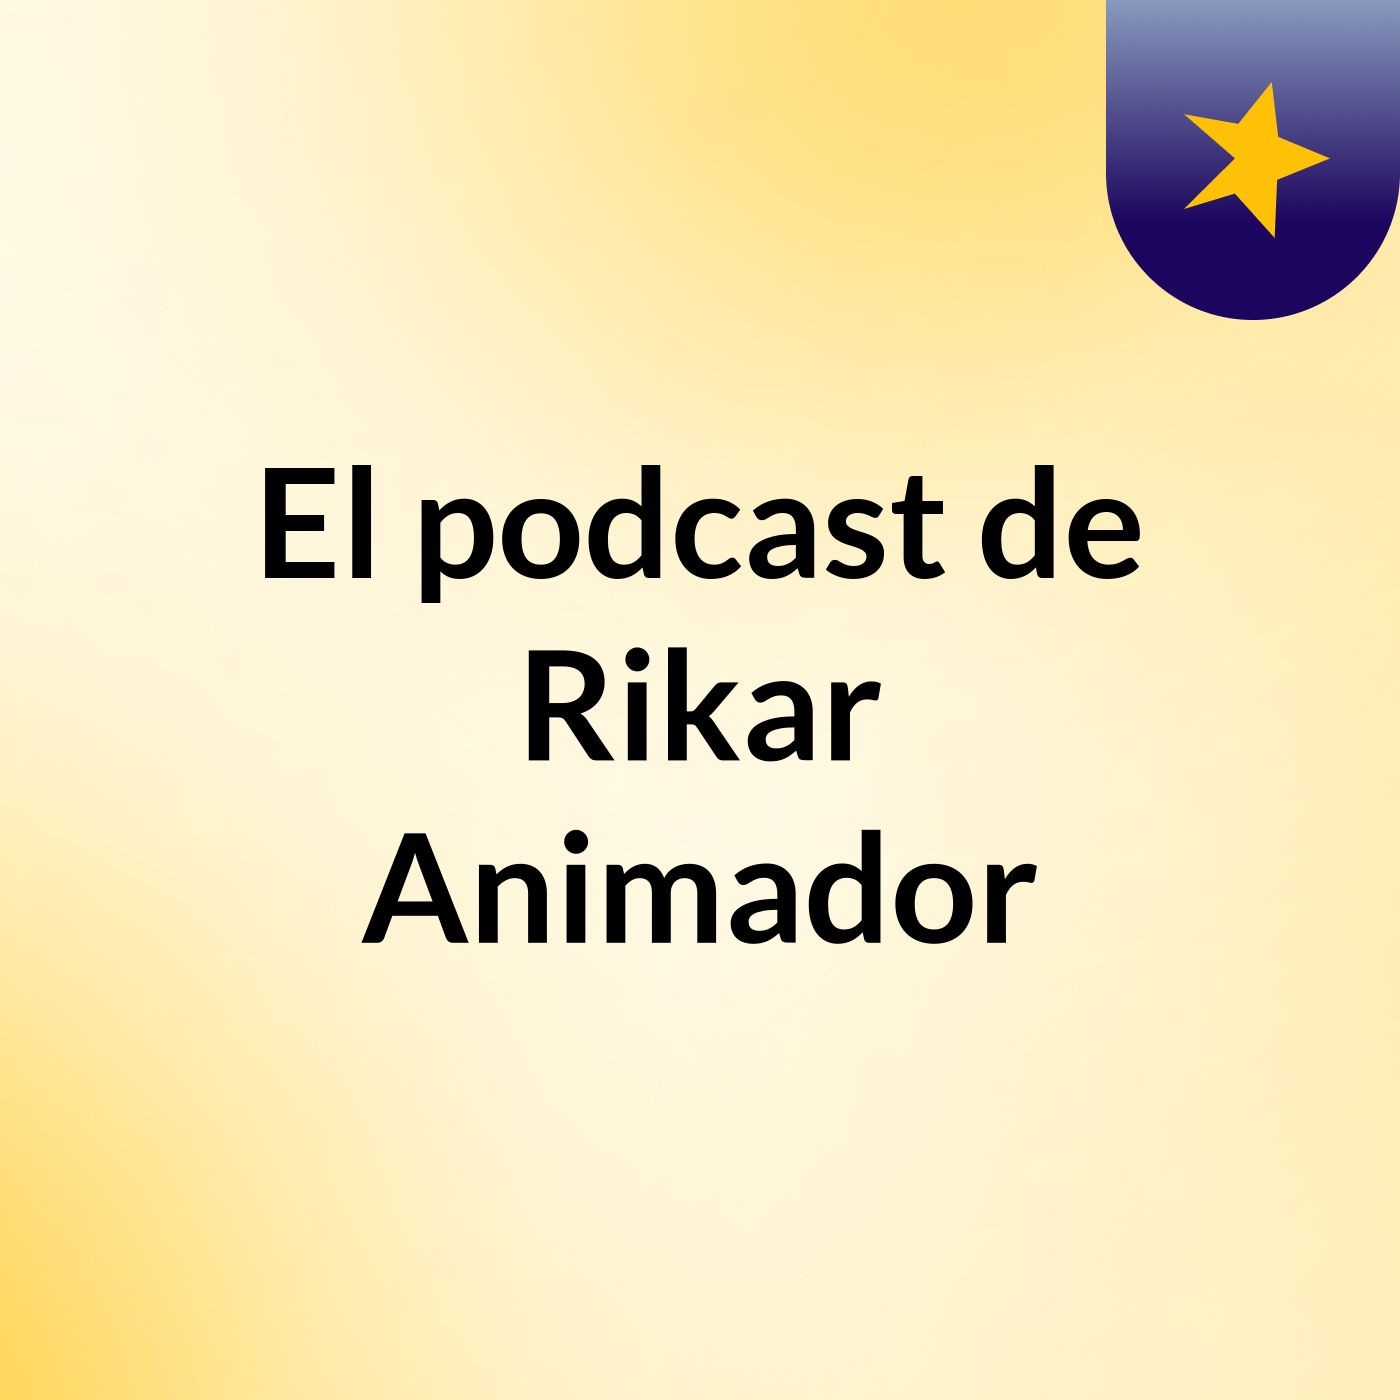 Episodio 6 - El podcast de Rikar Animador